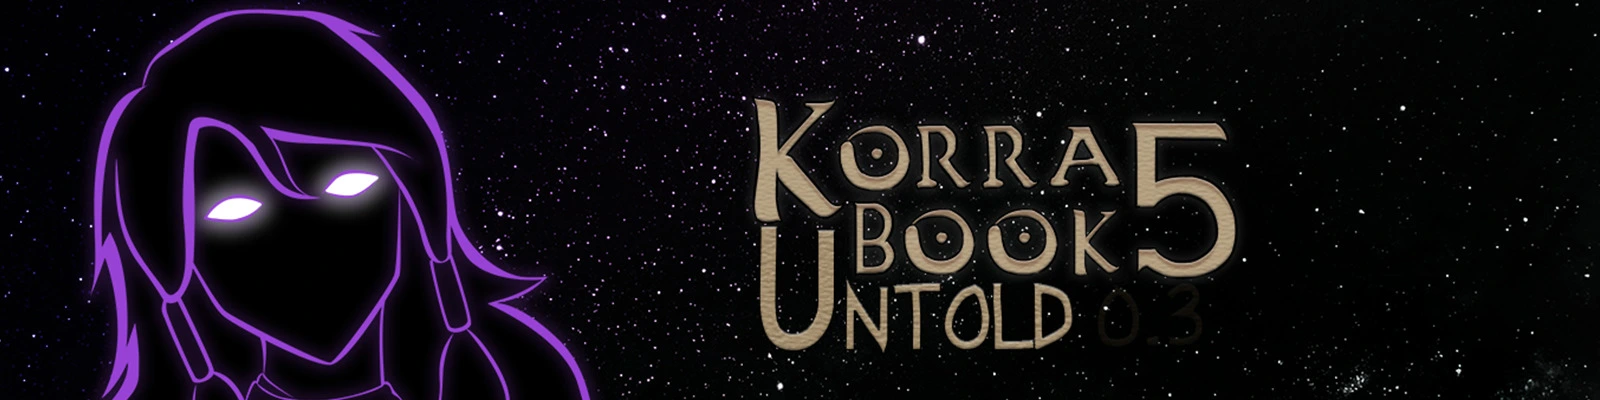 Book 5: Untold Legend of Korra [v0.9] main image